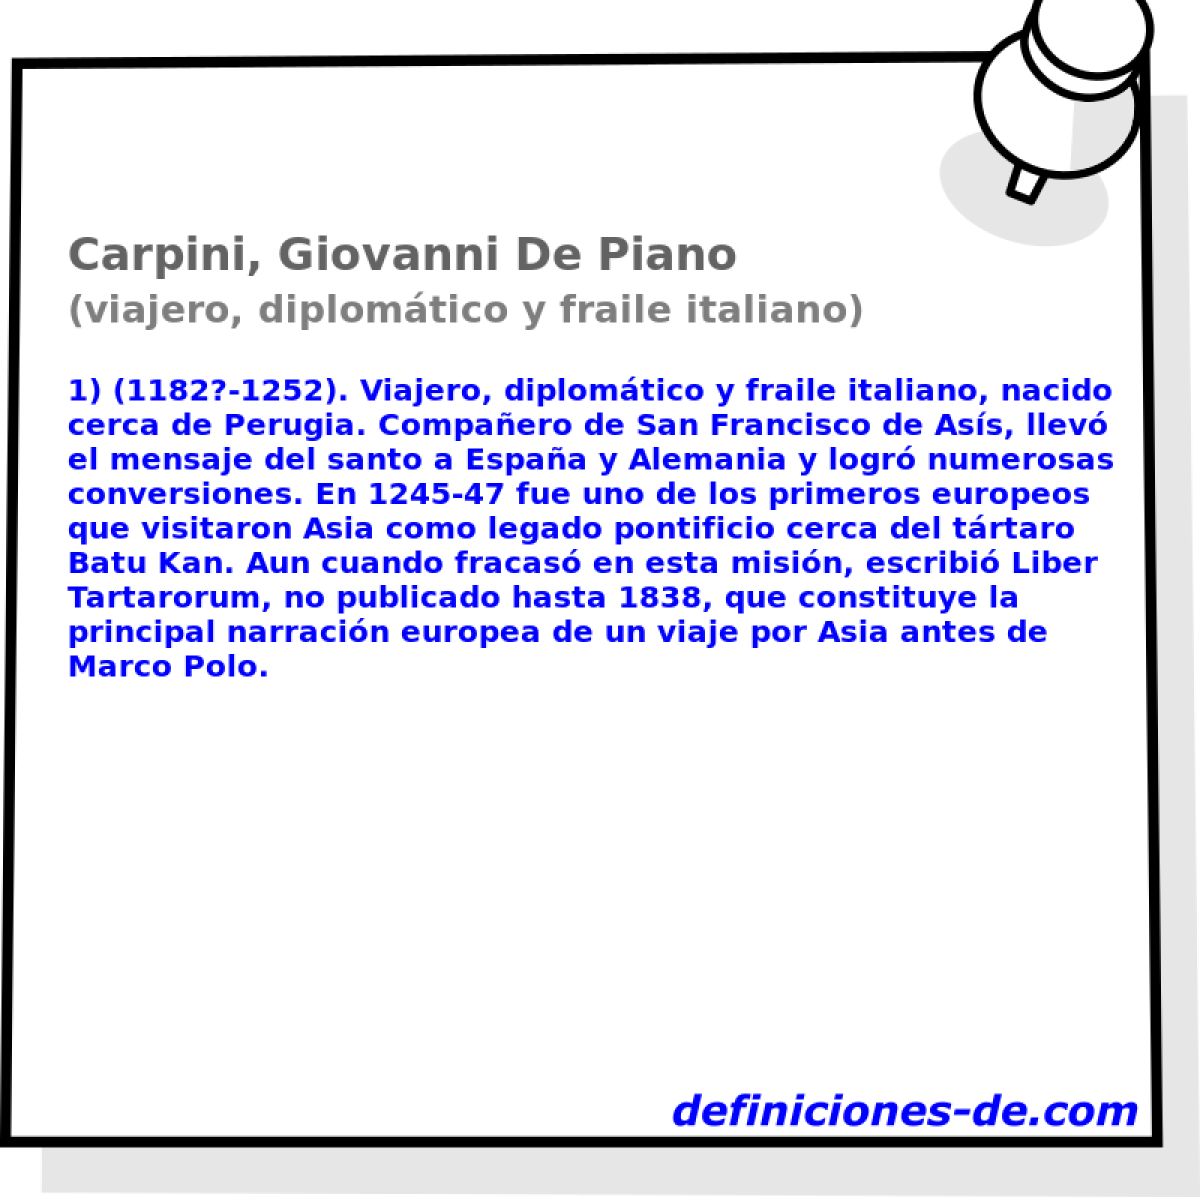 Carpini, Giovanni De Piano (viajero, diplomtico y fraile italiano)